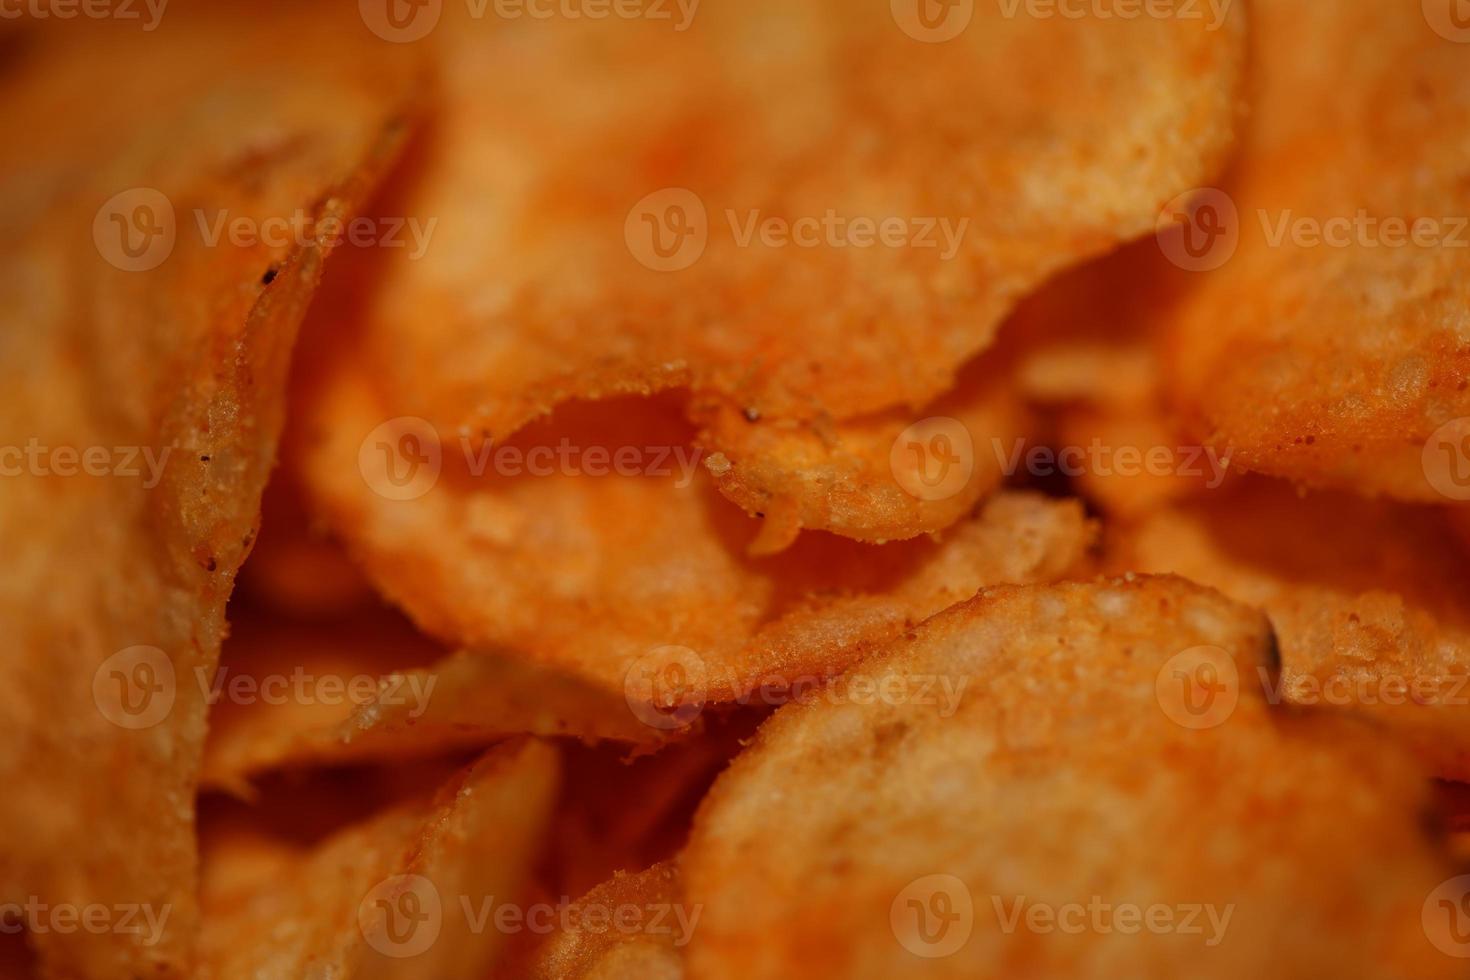 Haut vue de Patate frites avec paprika pimenter vite nourriture concept en mangeant déchet nourriture Contexte haute qualité gros Taille instant impressions Stock la photographie photo